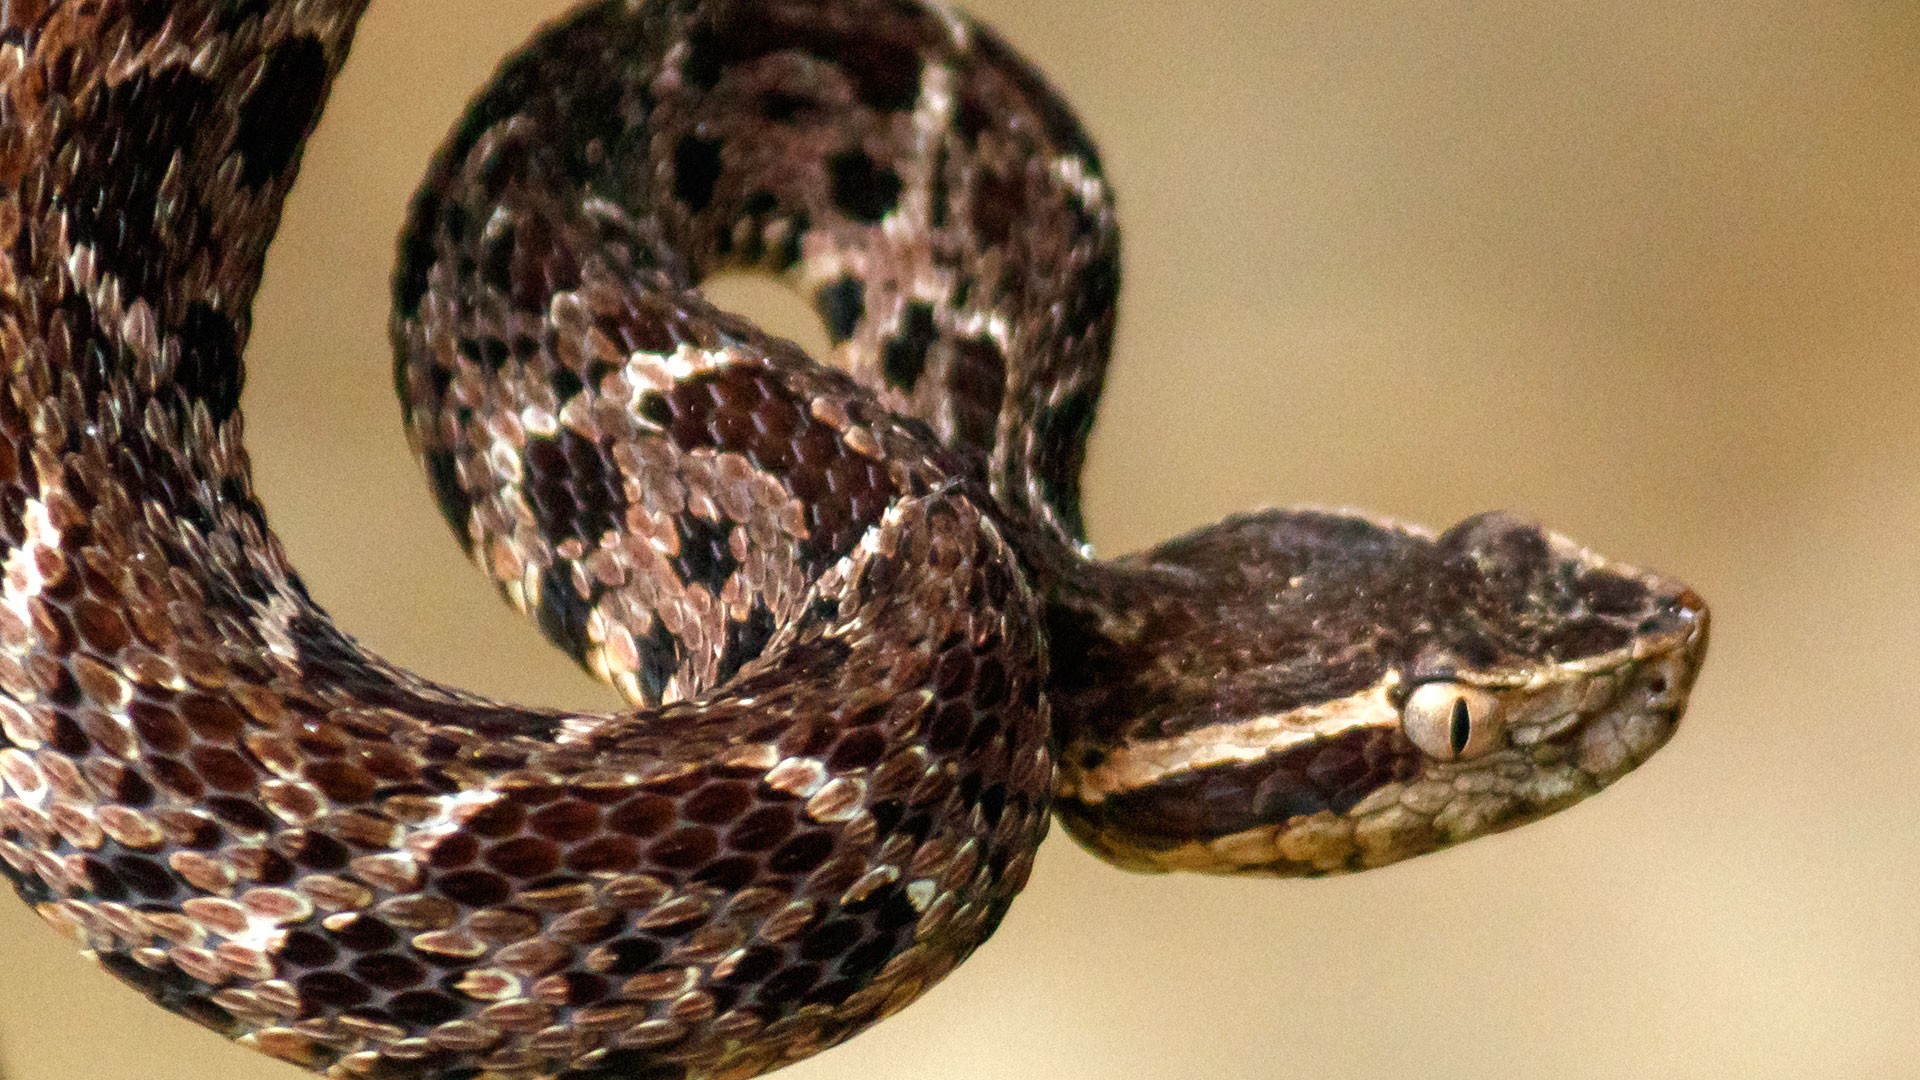 En todo el mundo existen 11 mil especies de reptiles, de las cuales 3.700 son serpientes (Archivo)